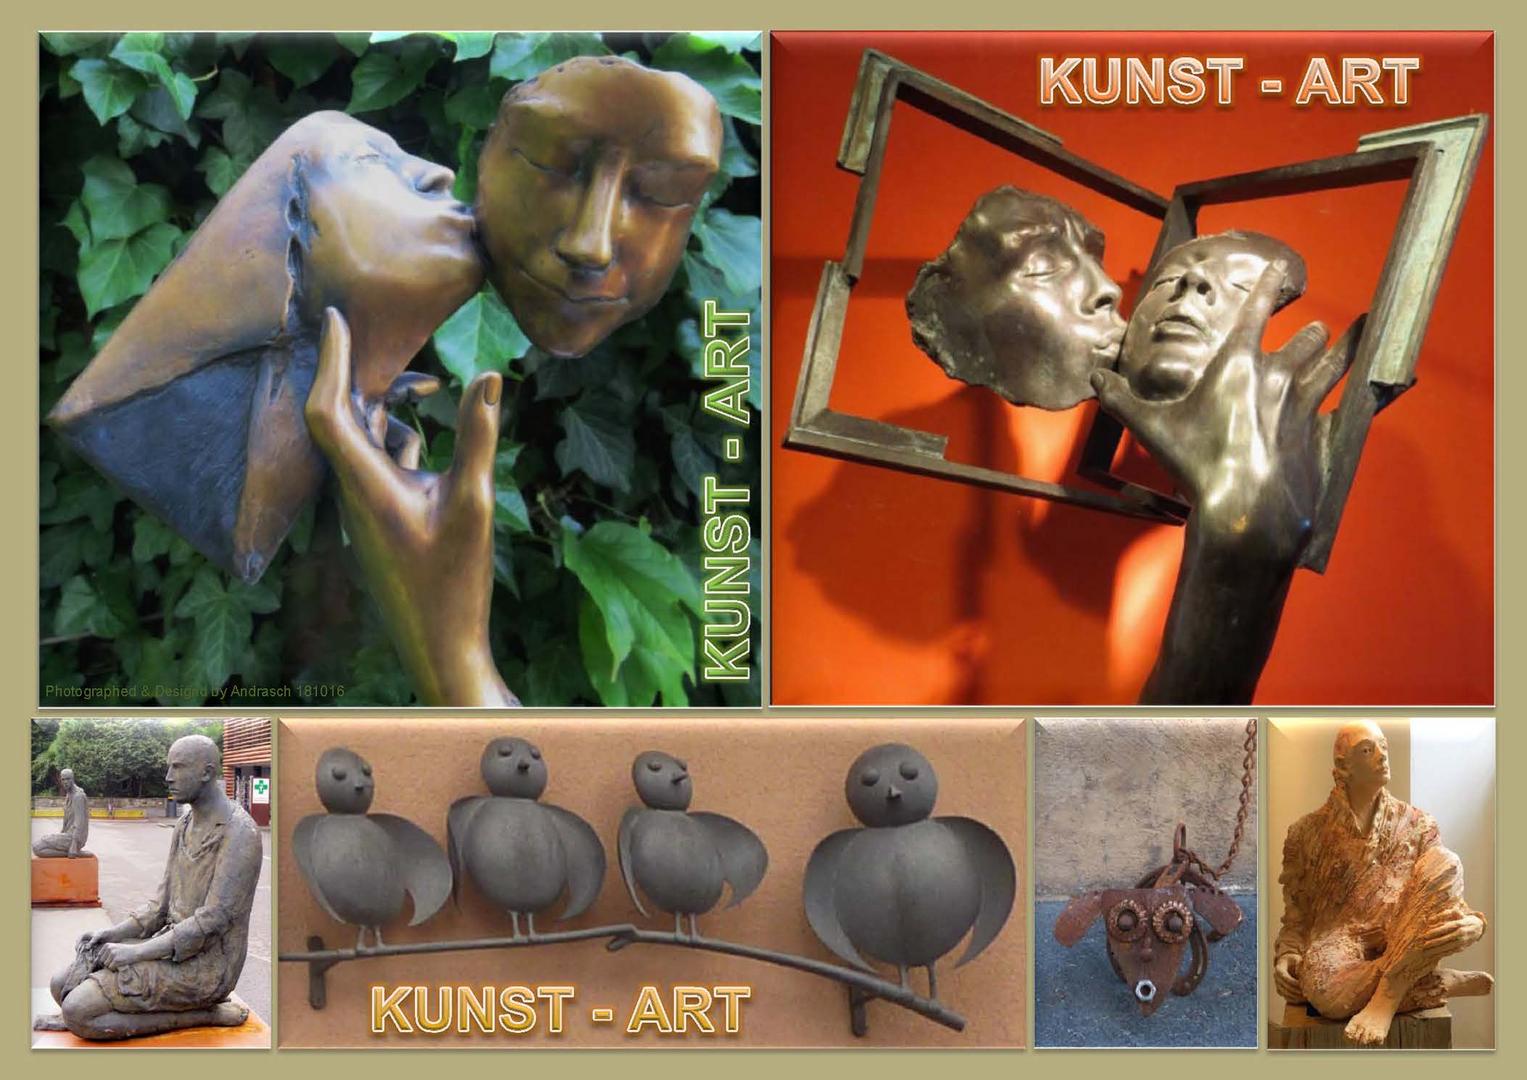 KUNST - ART